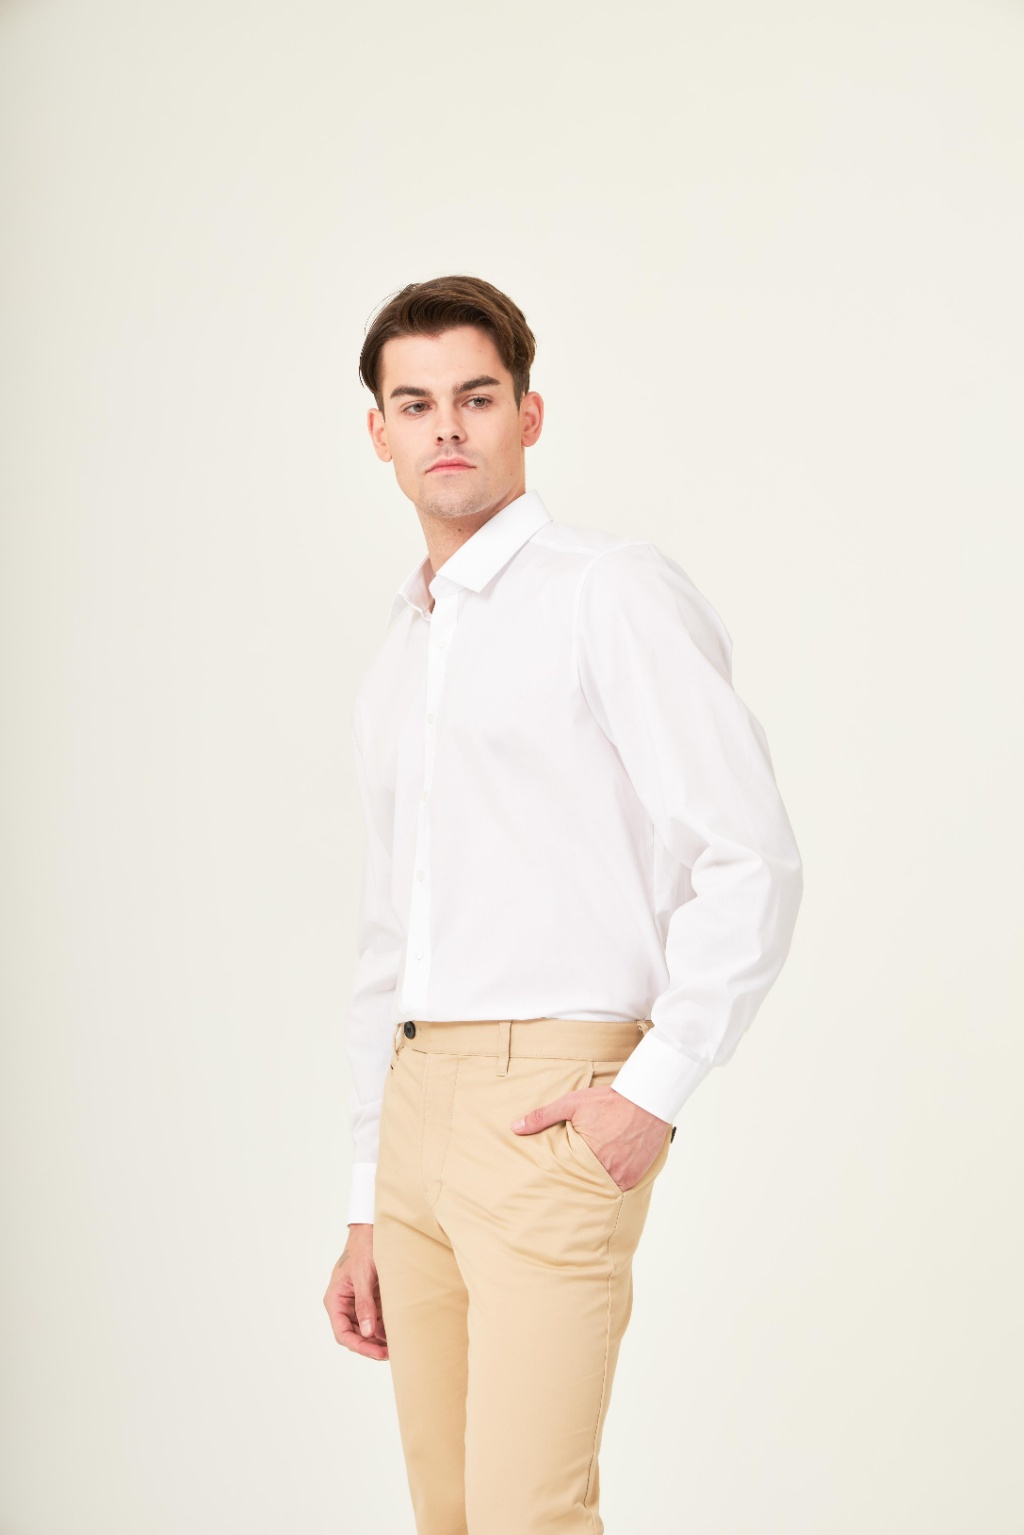 เกี่ยวกับ OLYMP Level Five Shirt เสื้อเชิ้ตชาย สีขาว ผ้าเรียบ ทรงพอดีตัว ยืดหยุ่นได้ดี รีดง่าย